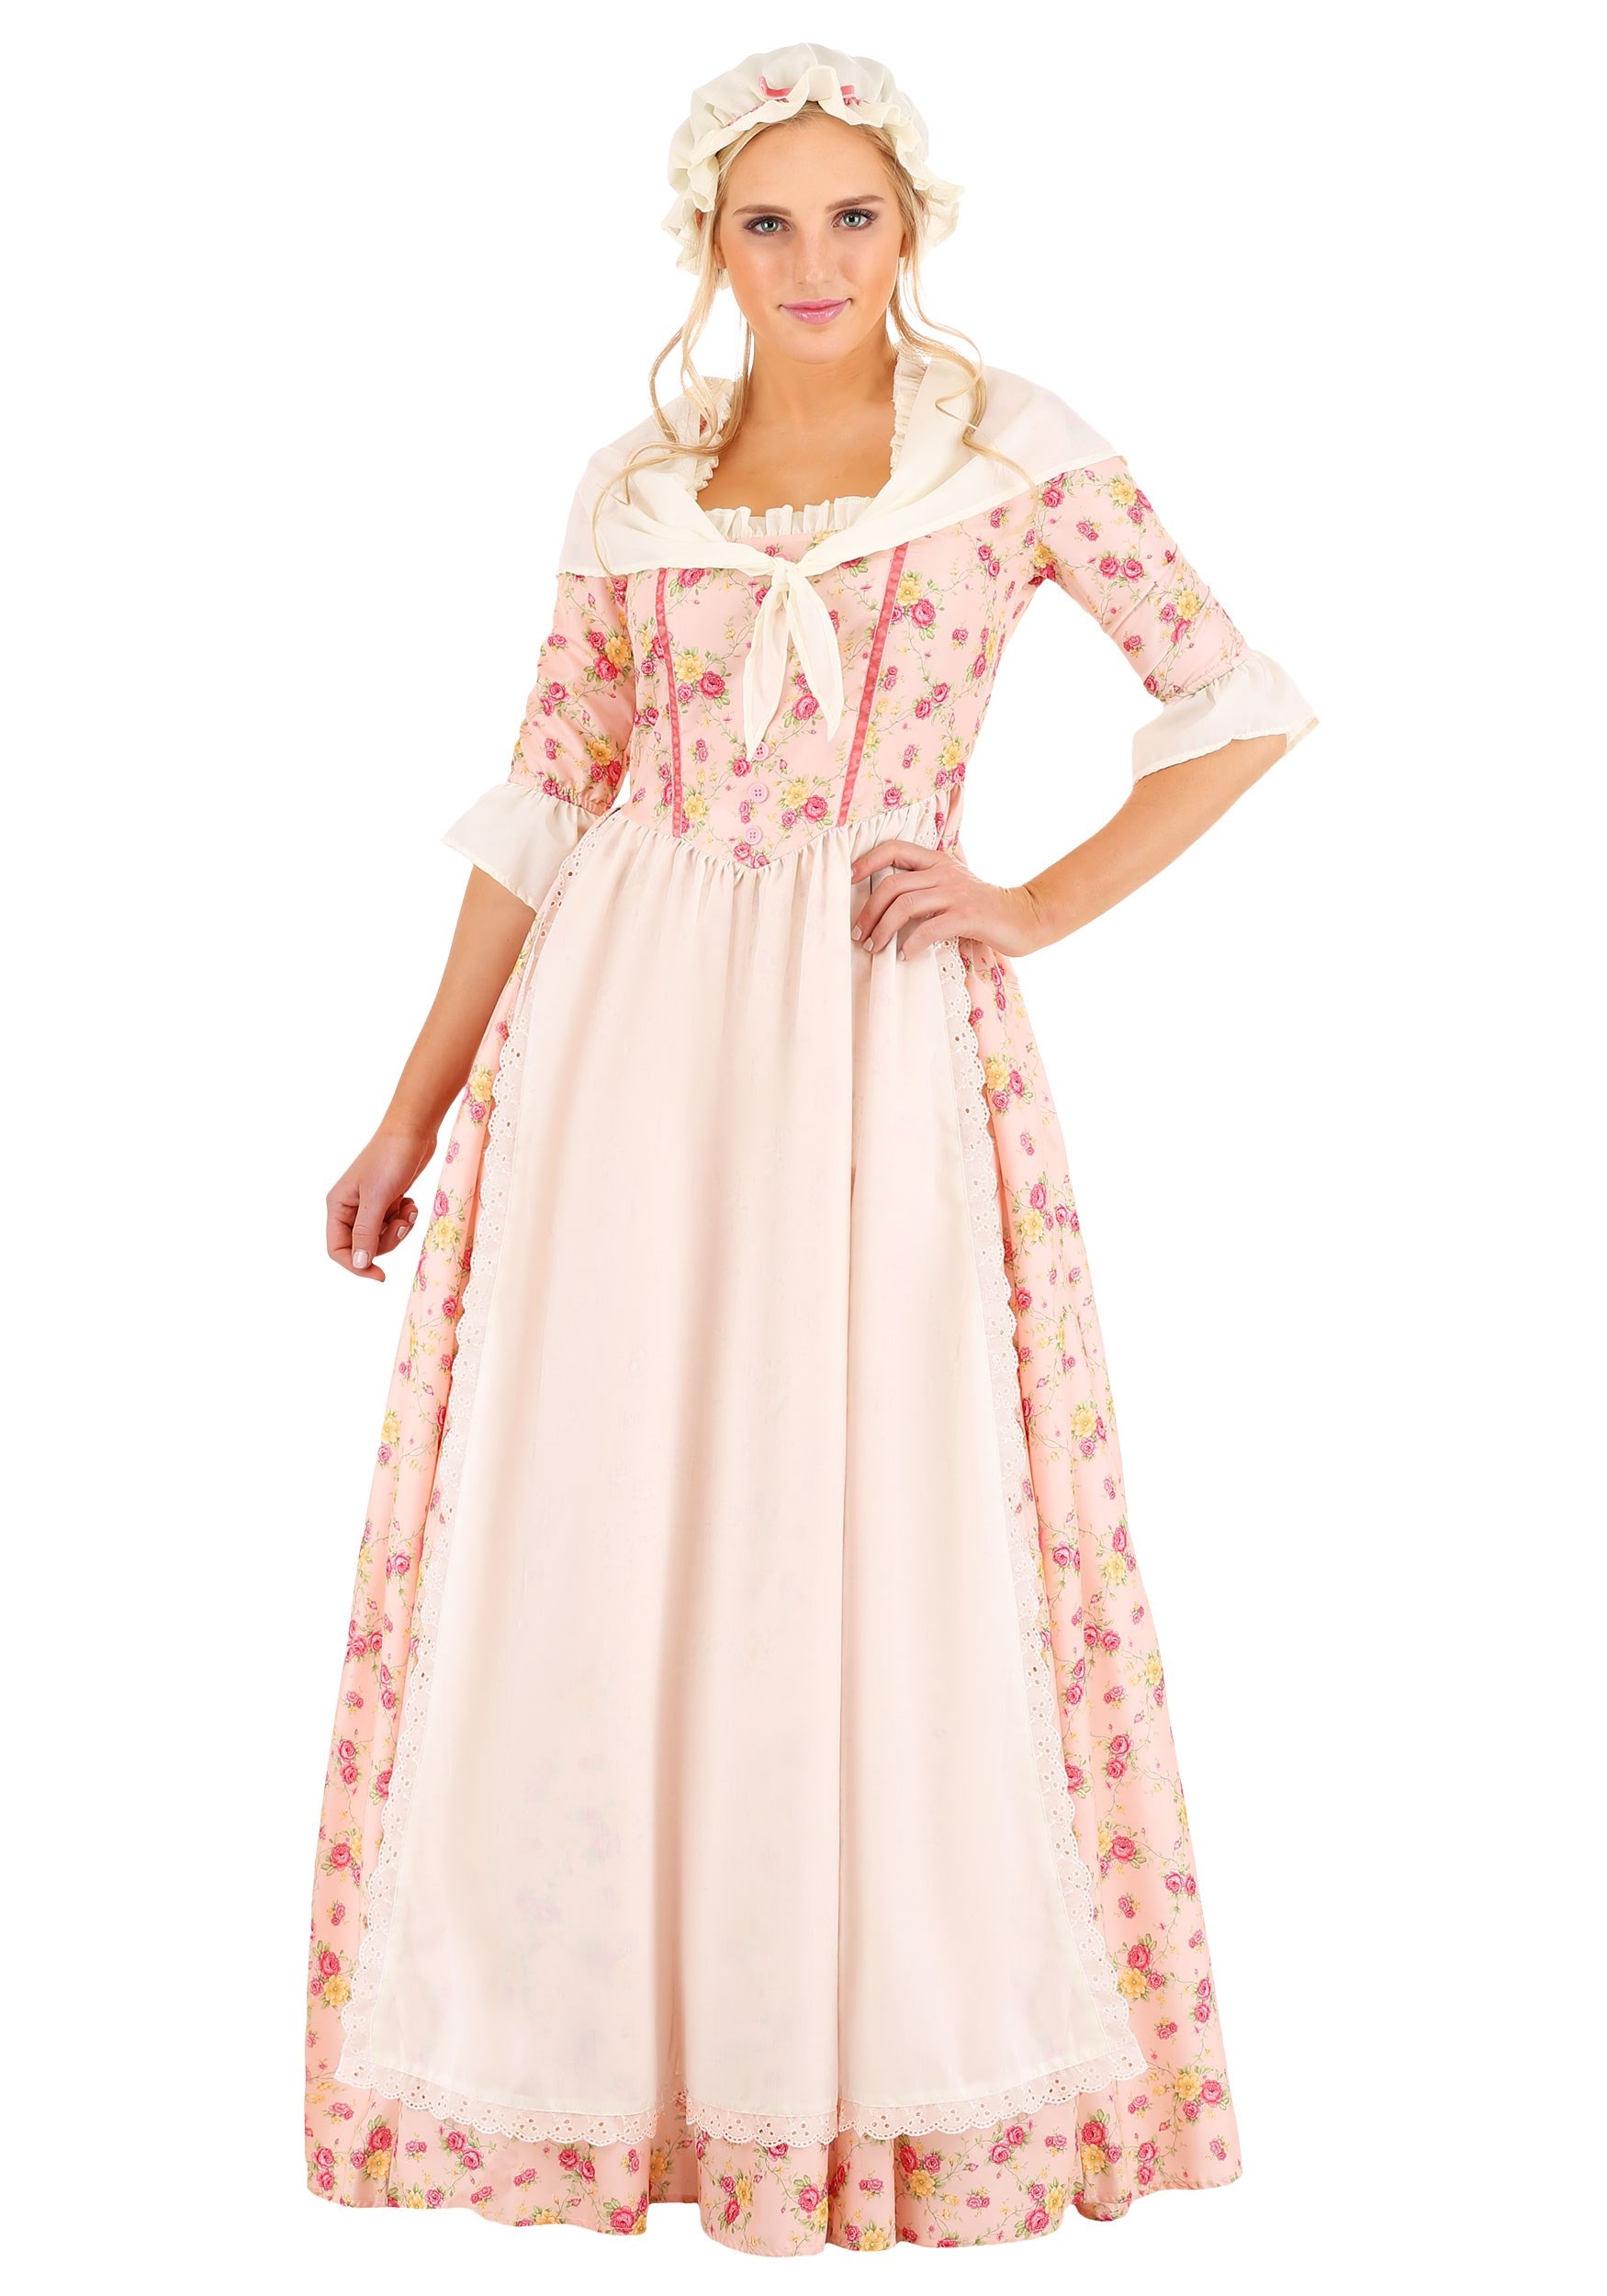 Colonial Women's Farmstead Dress Fancy Dress Costume